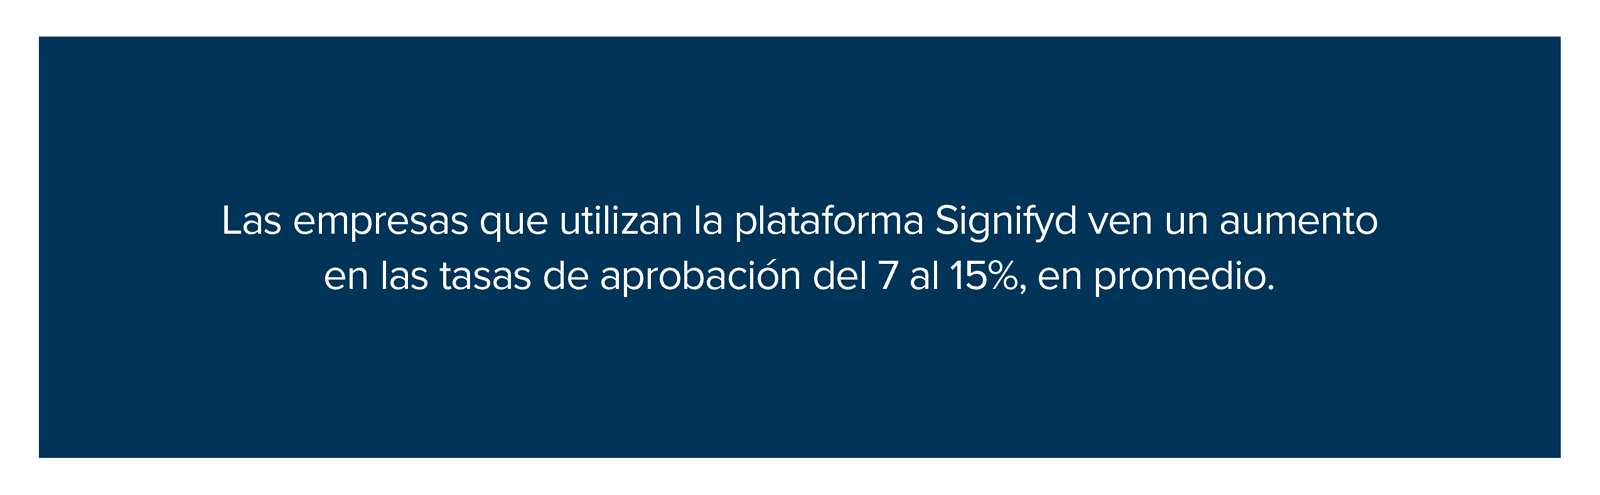 Las empresas que utilizan la plataforma Signifyd ven un aumento en las tasas de aprobación del 7 al 15%, en promedio.